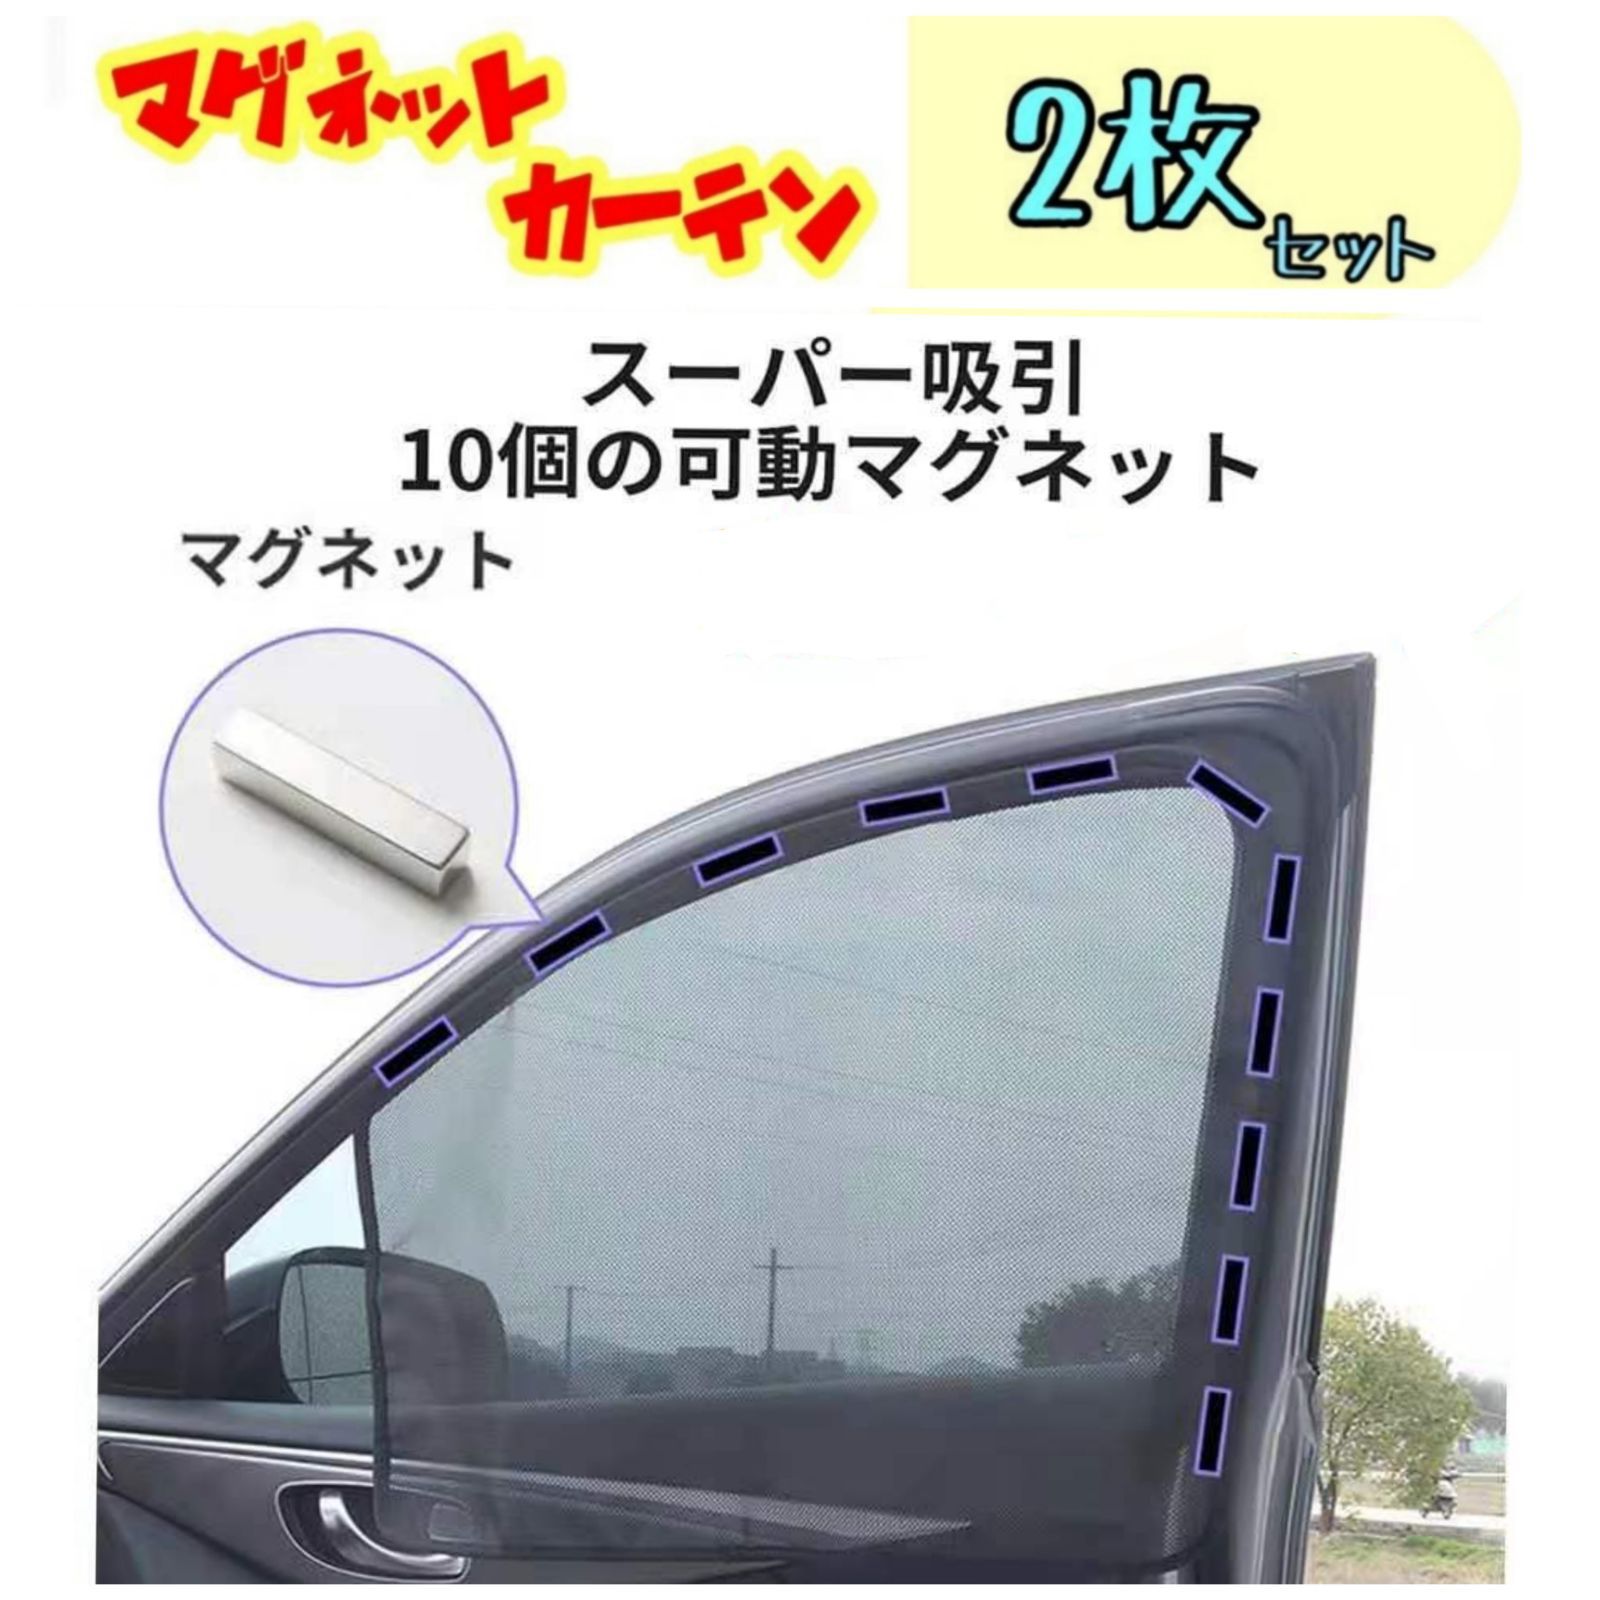 2枚セット 車中泊 磁石カーテン 車用網戸 マグネット式 遮光サンシェード HayabusaAuto メルカリ